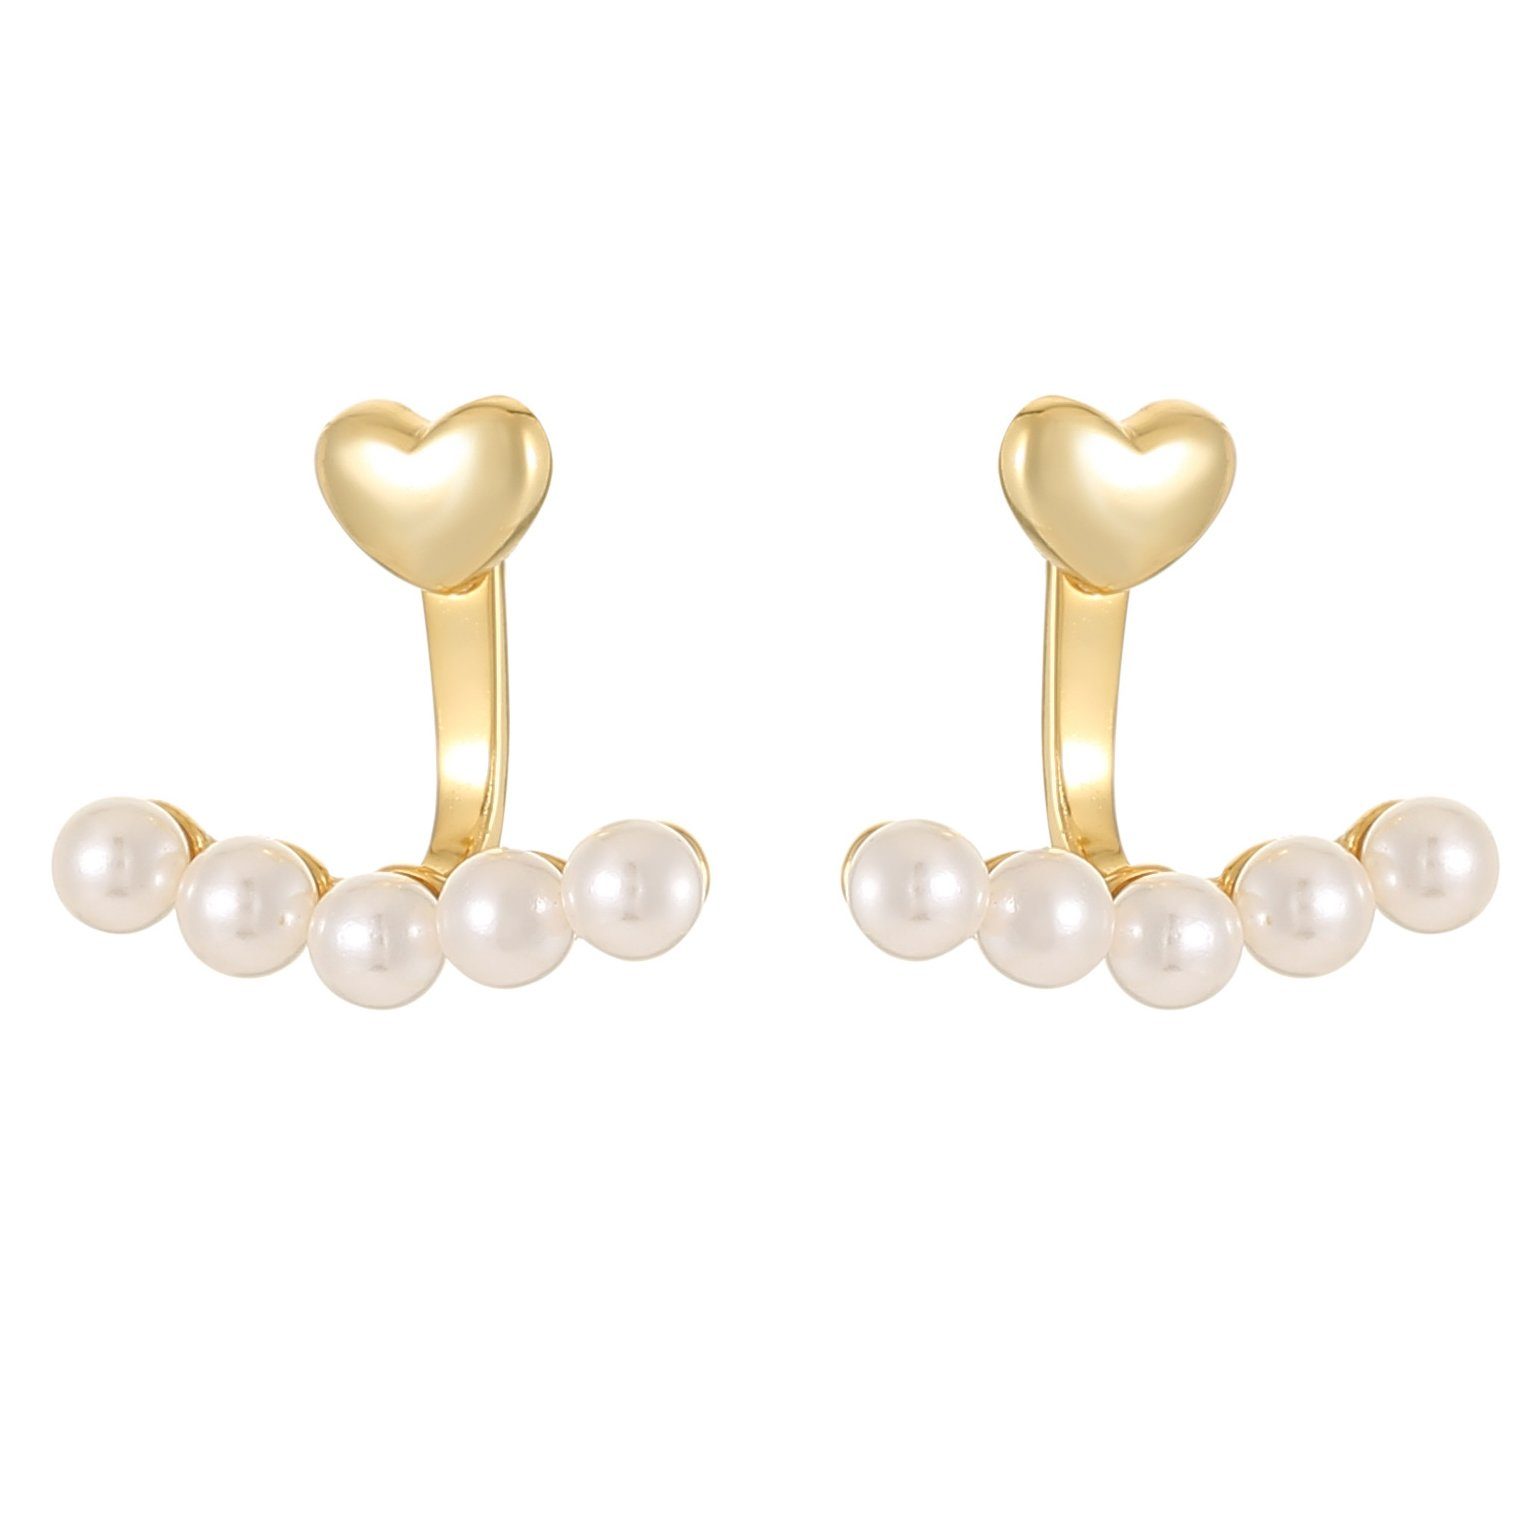 Haiaveng Paar Ohrhänger Liebe Herz Perle Ohrringe, s925 Silber Ohrringe, Liebe Ohrringe | Ohrhänger